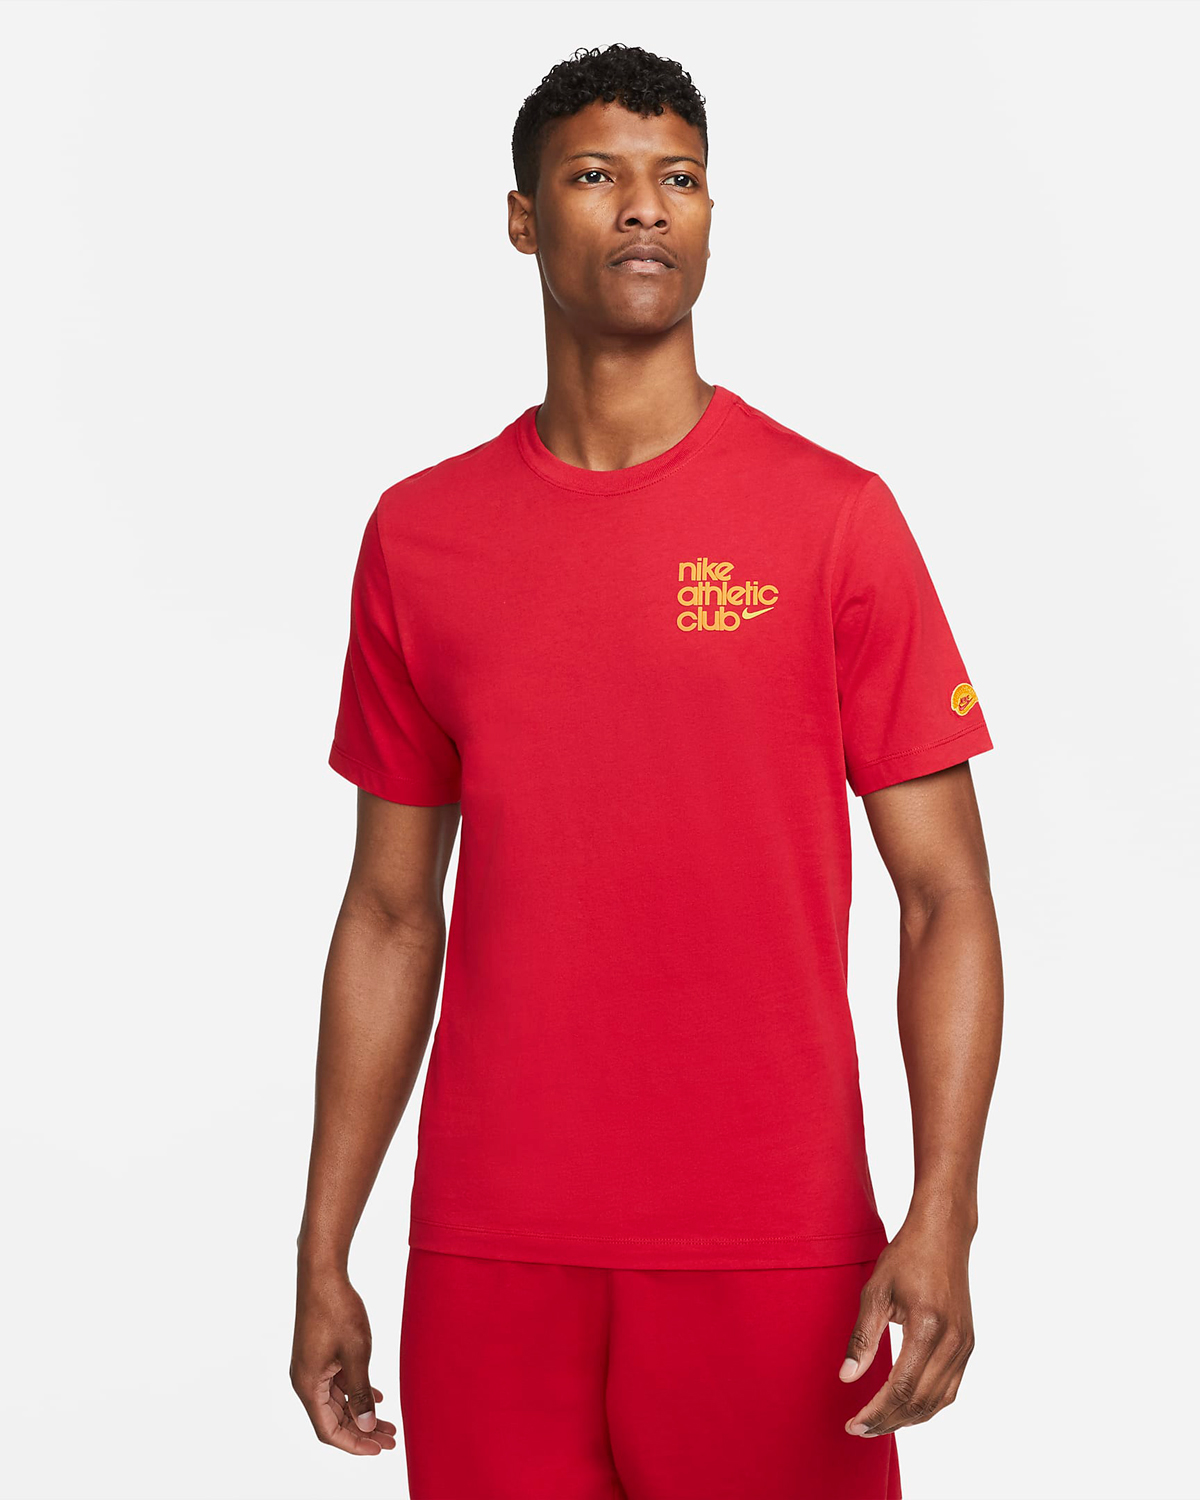 Nike-Athletic-Club-T-Shirt-Gym-Red-1